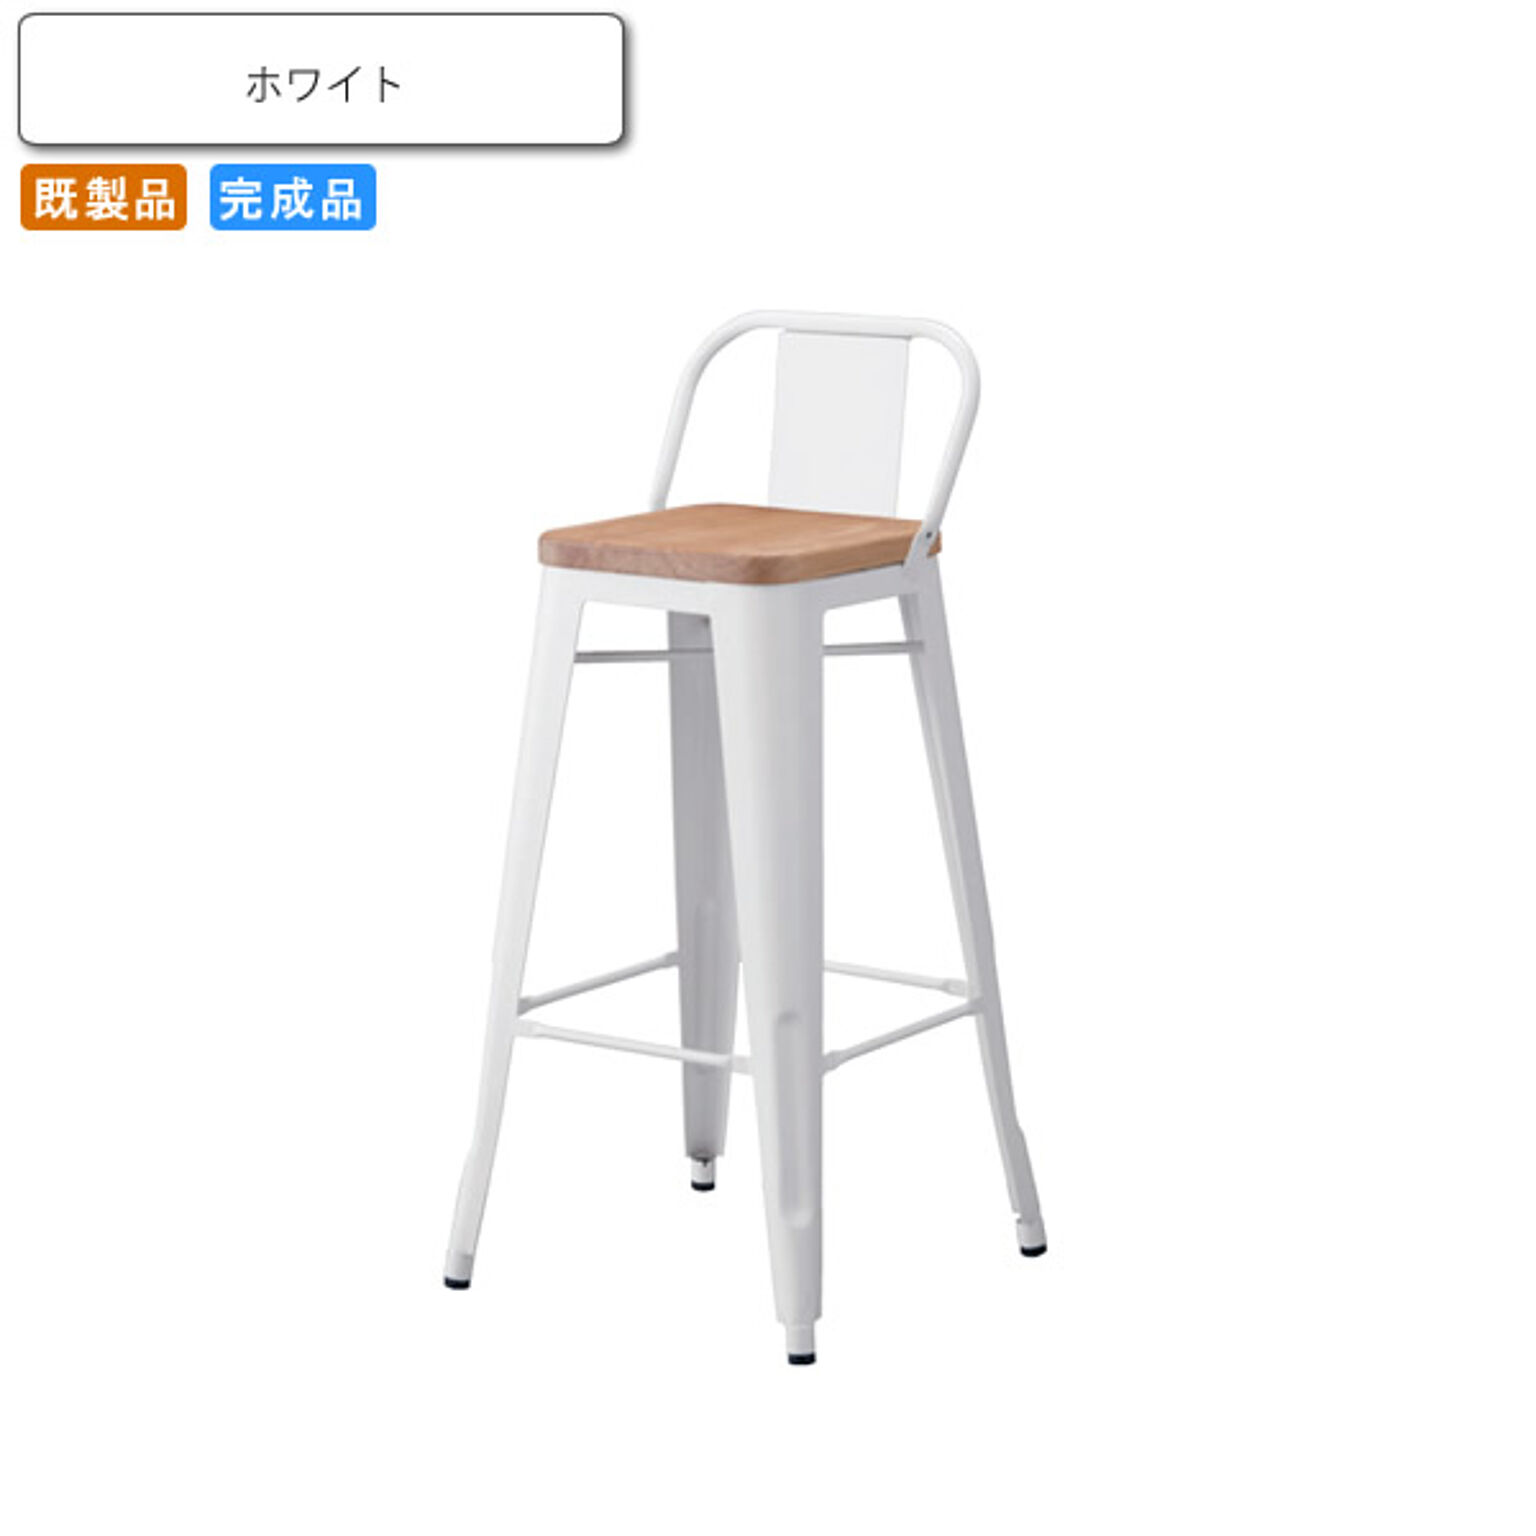 カウンターチェアー ハイチェア いす 椅子 スツール  オフリーオ3型 ホワイト 業務用家具シリーズ STEEL（スチール）  店舗 施設 コントラクト